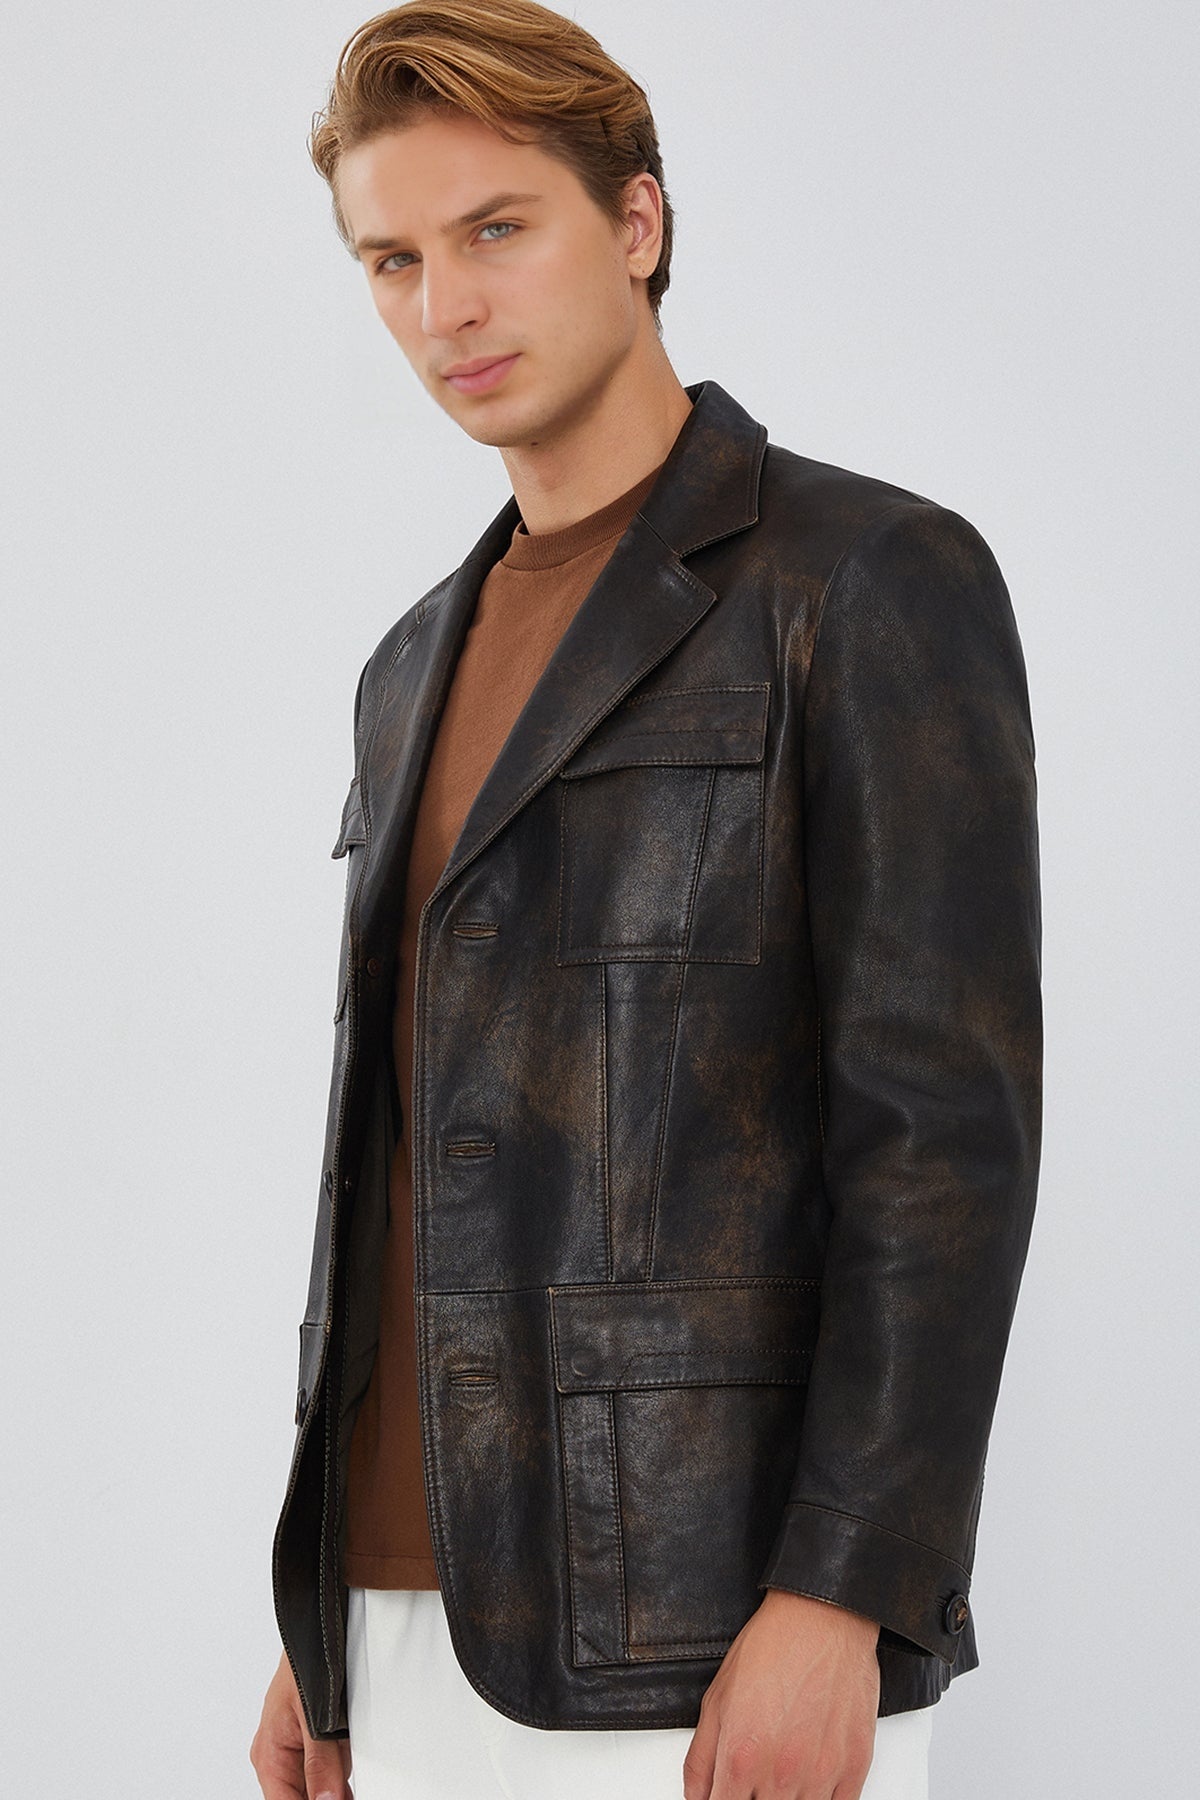 Kane Men's Brown Leather Jacket